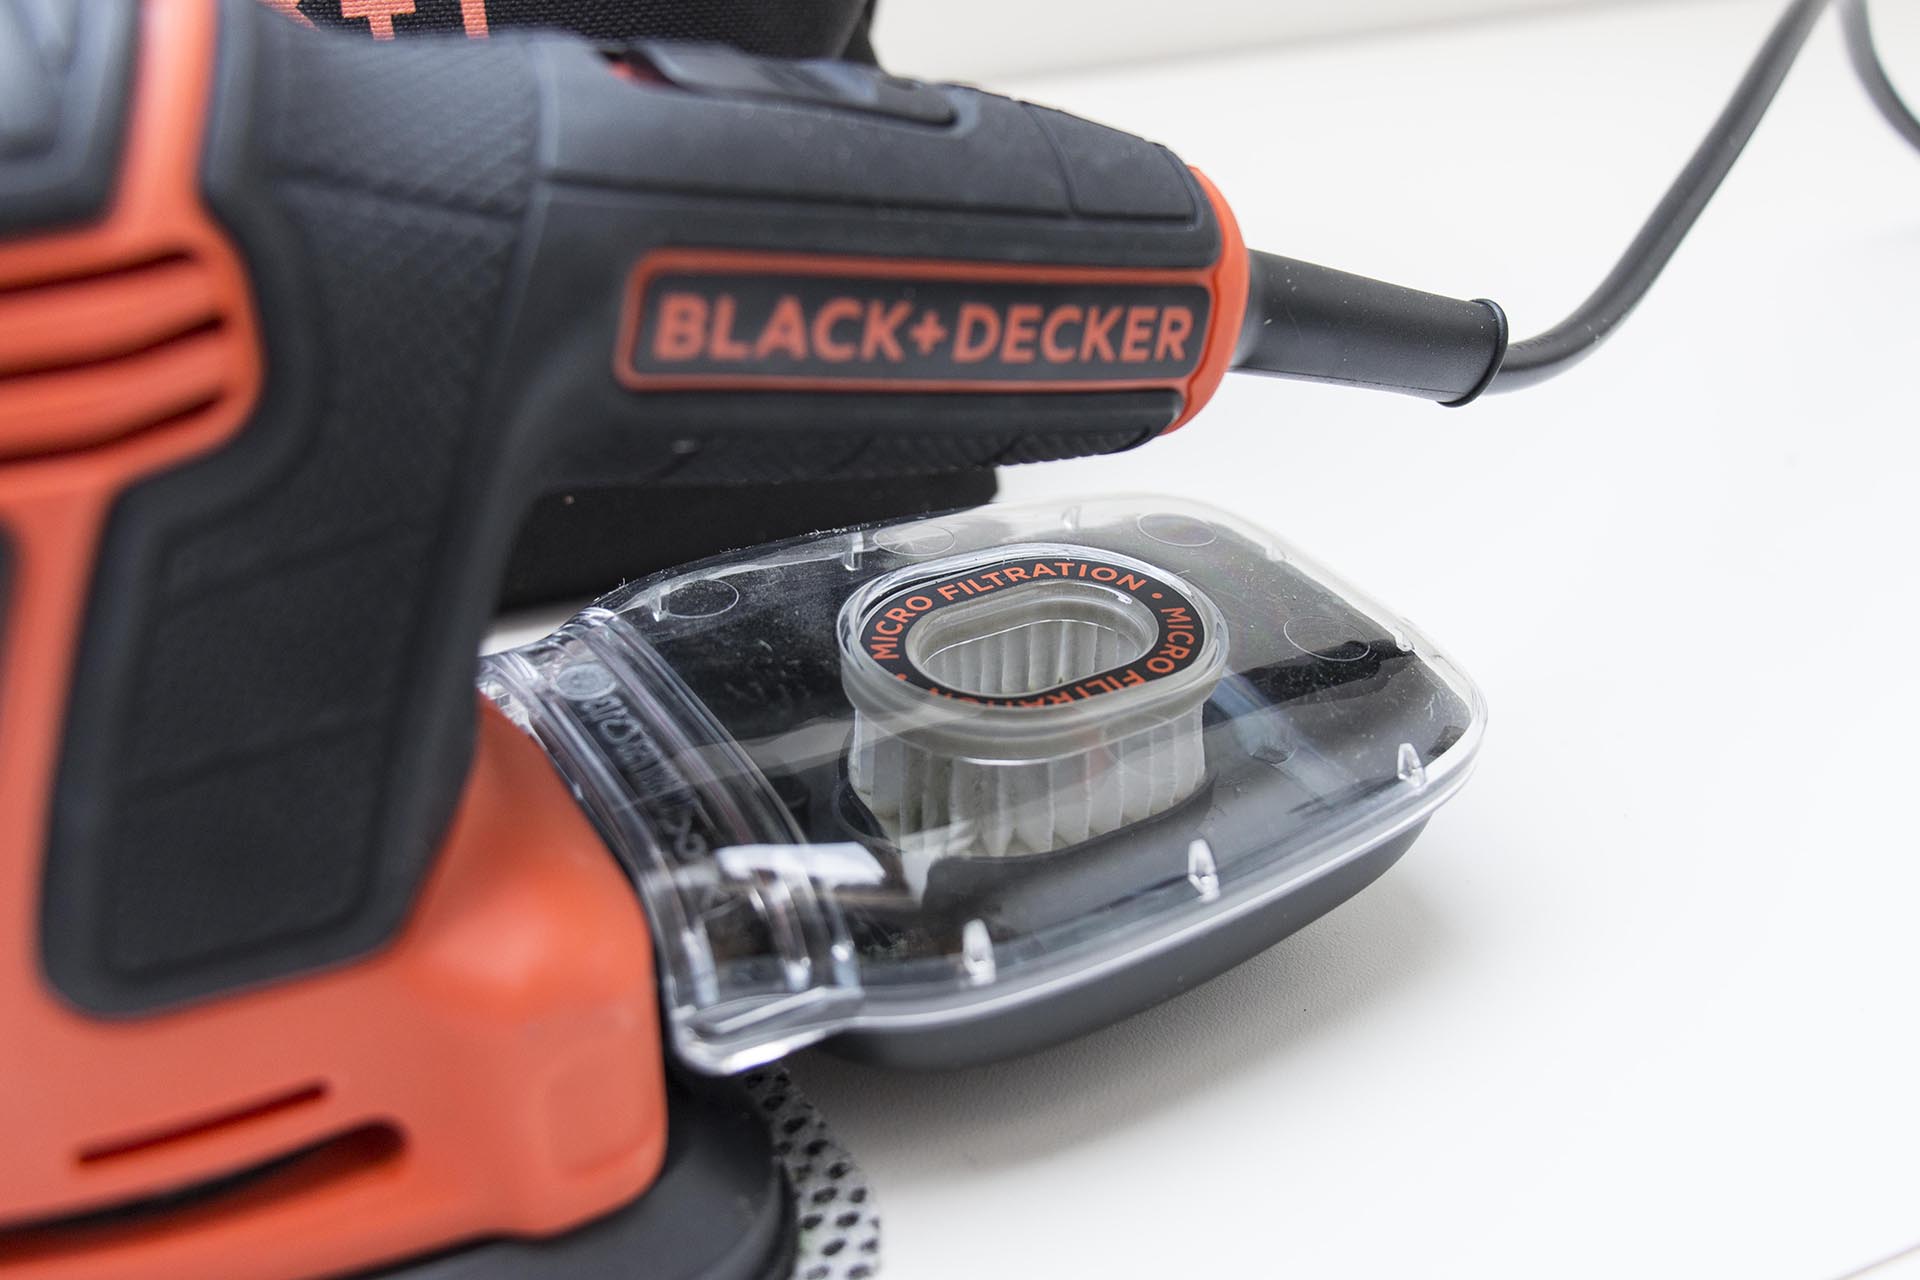 Review: Black+Decker Next Generation (schuurmachine) - GadgetGear.nl